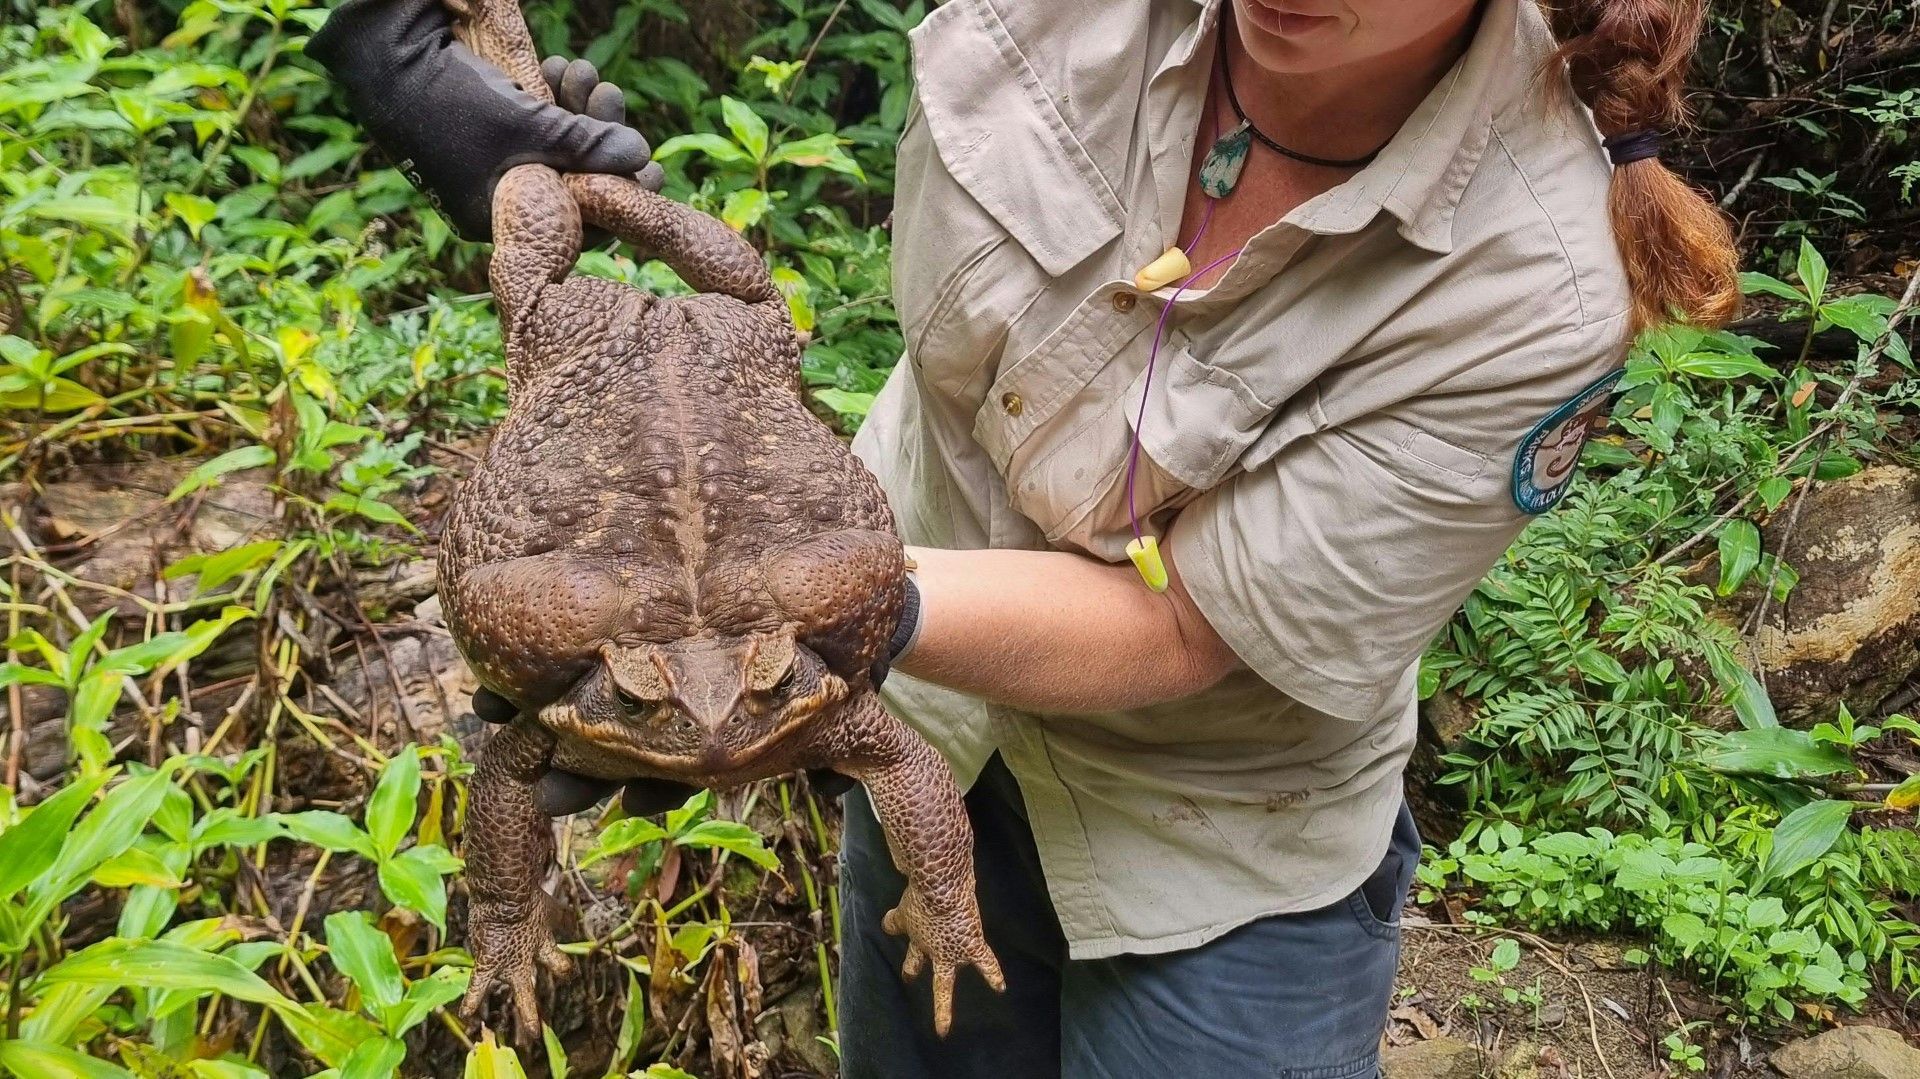 Giant poisonous toad found in Australia